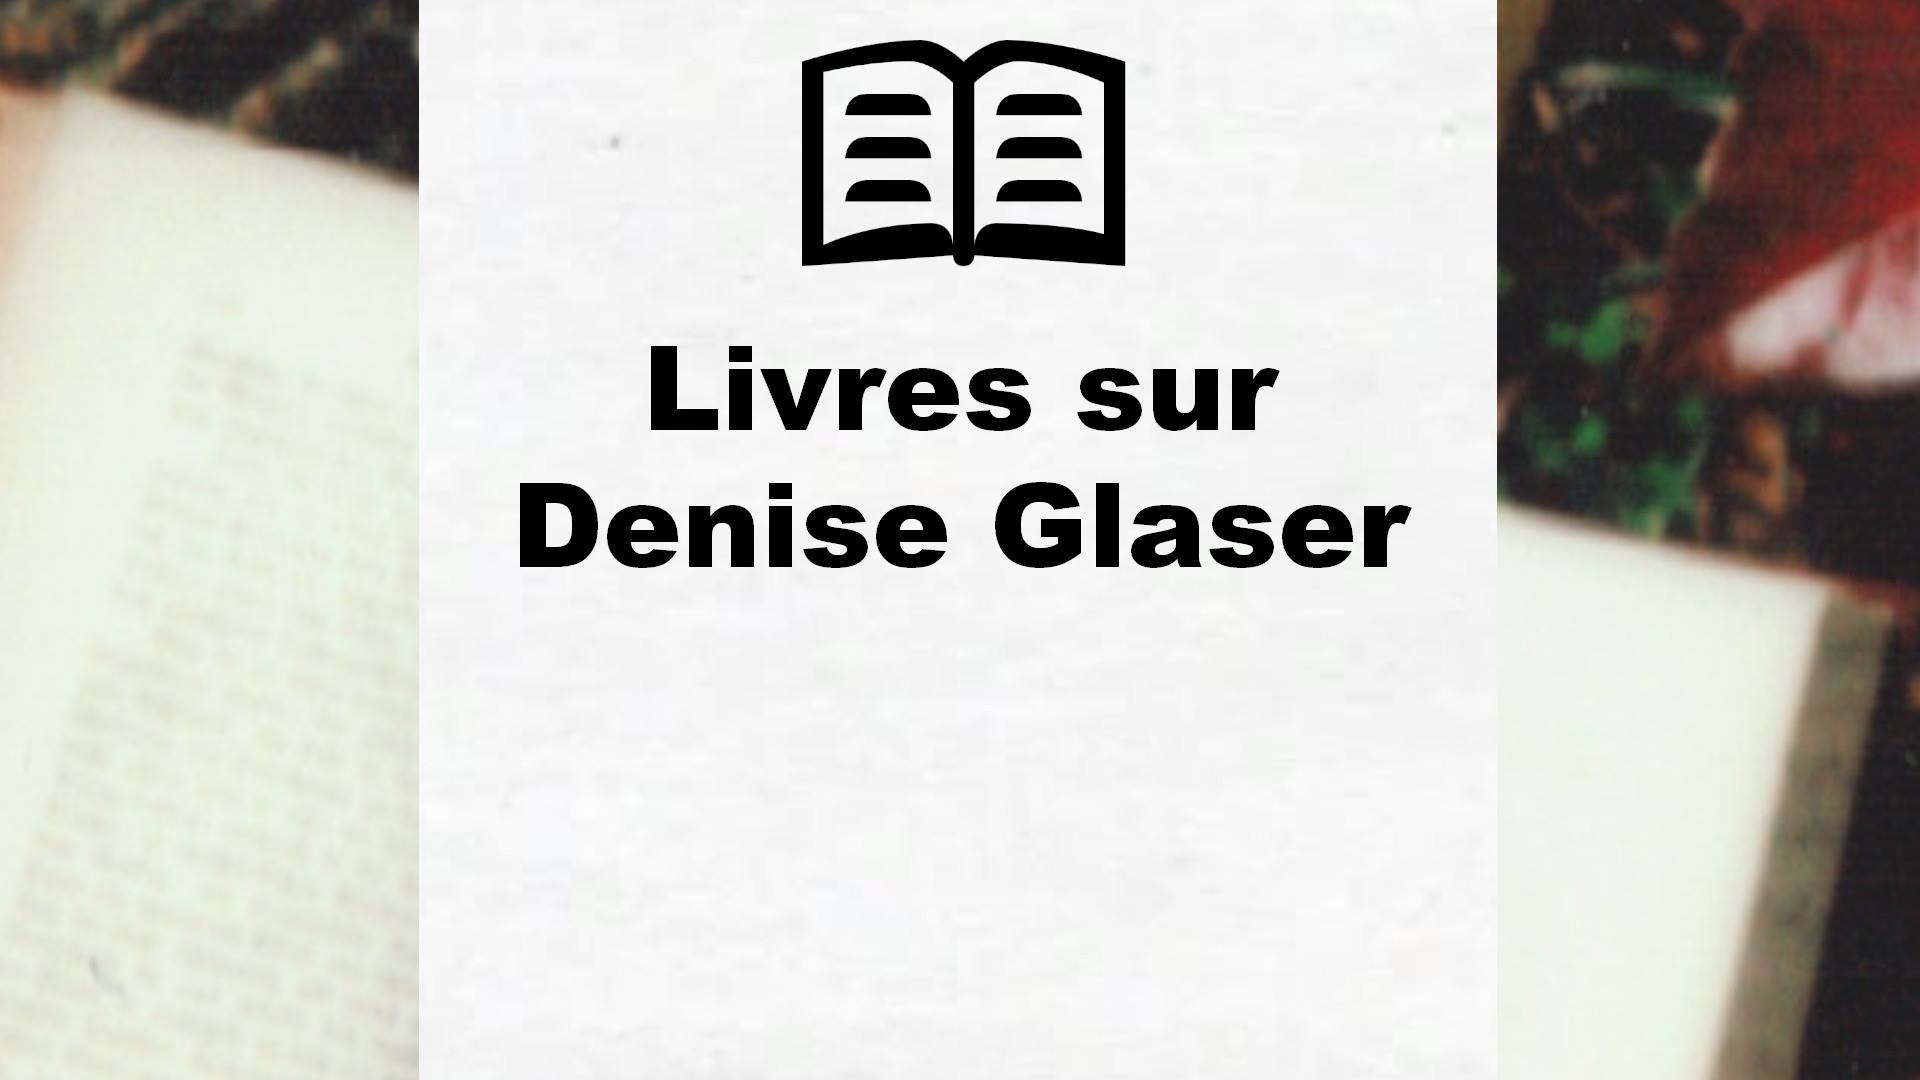 Livres sur Denise Glaser